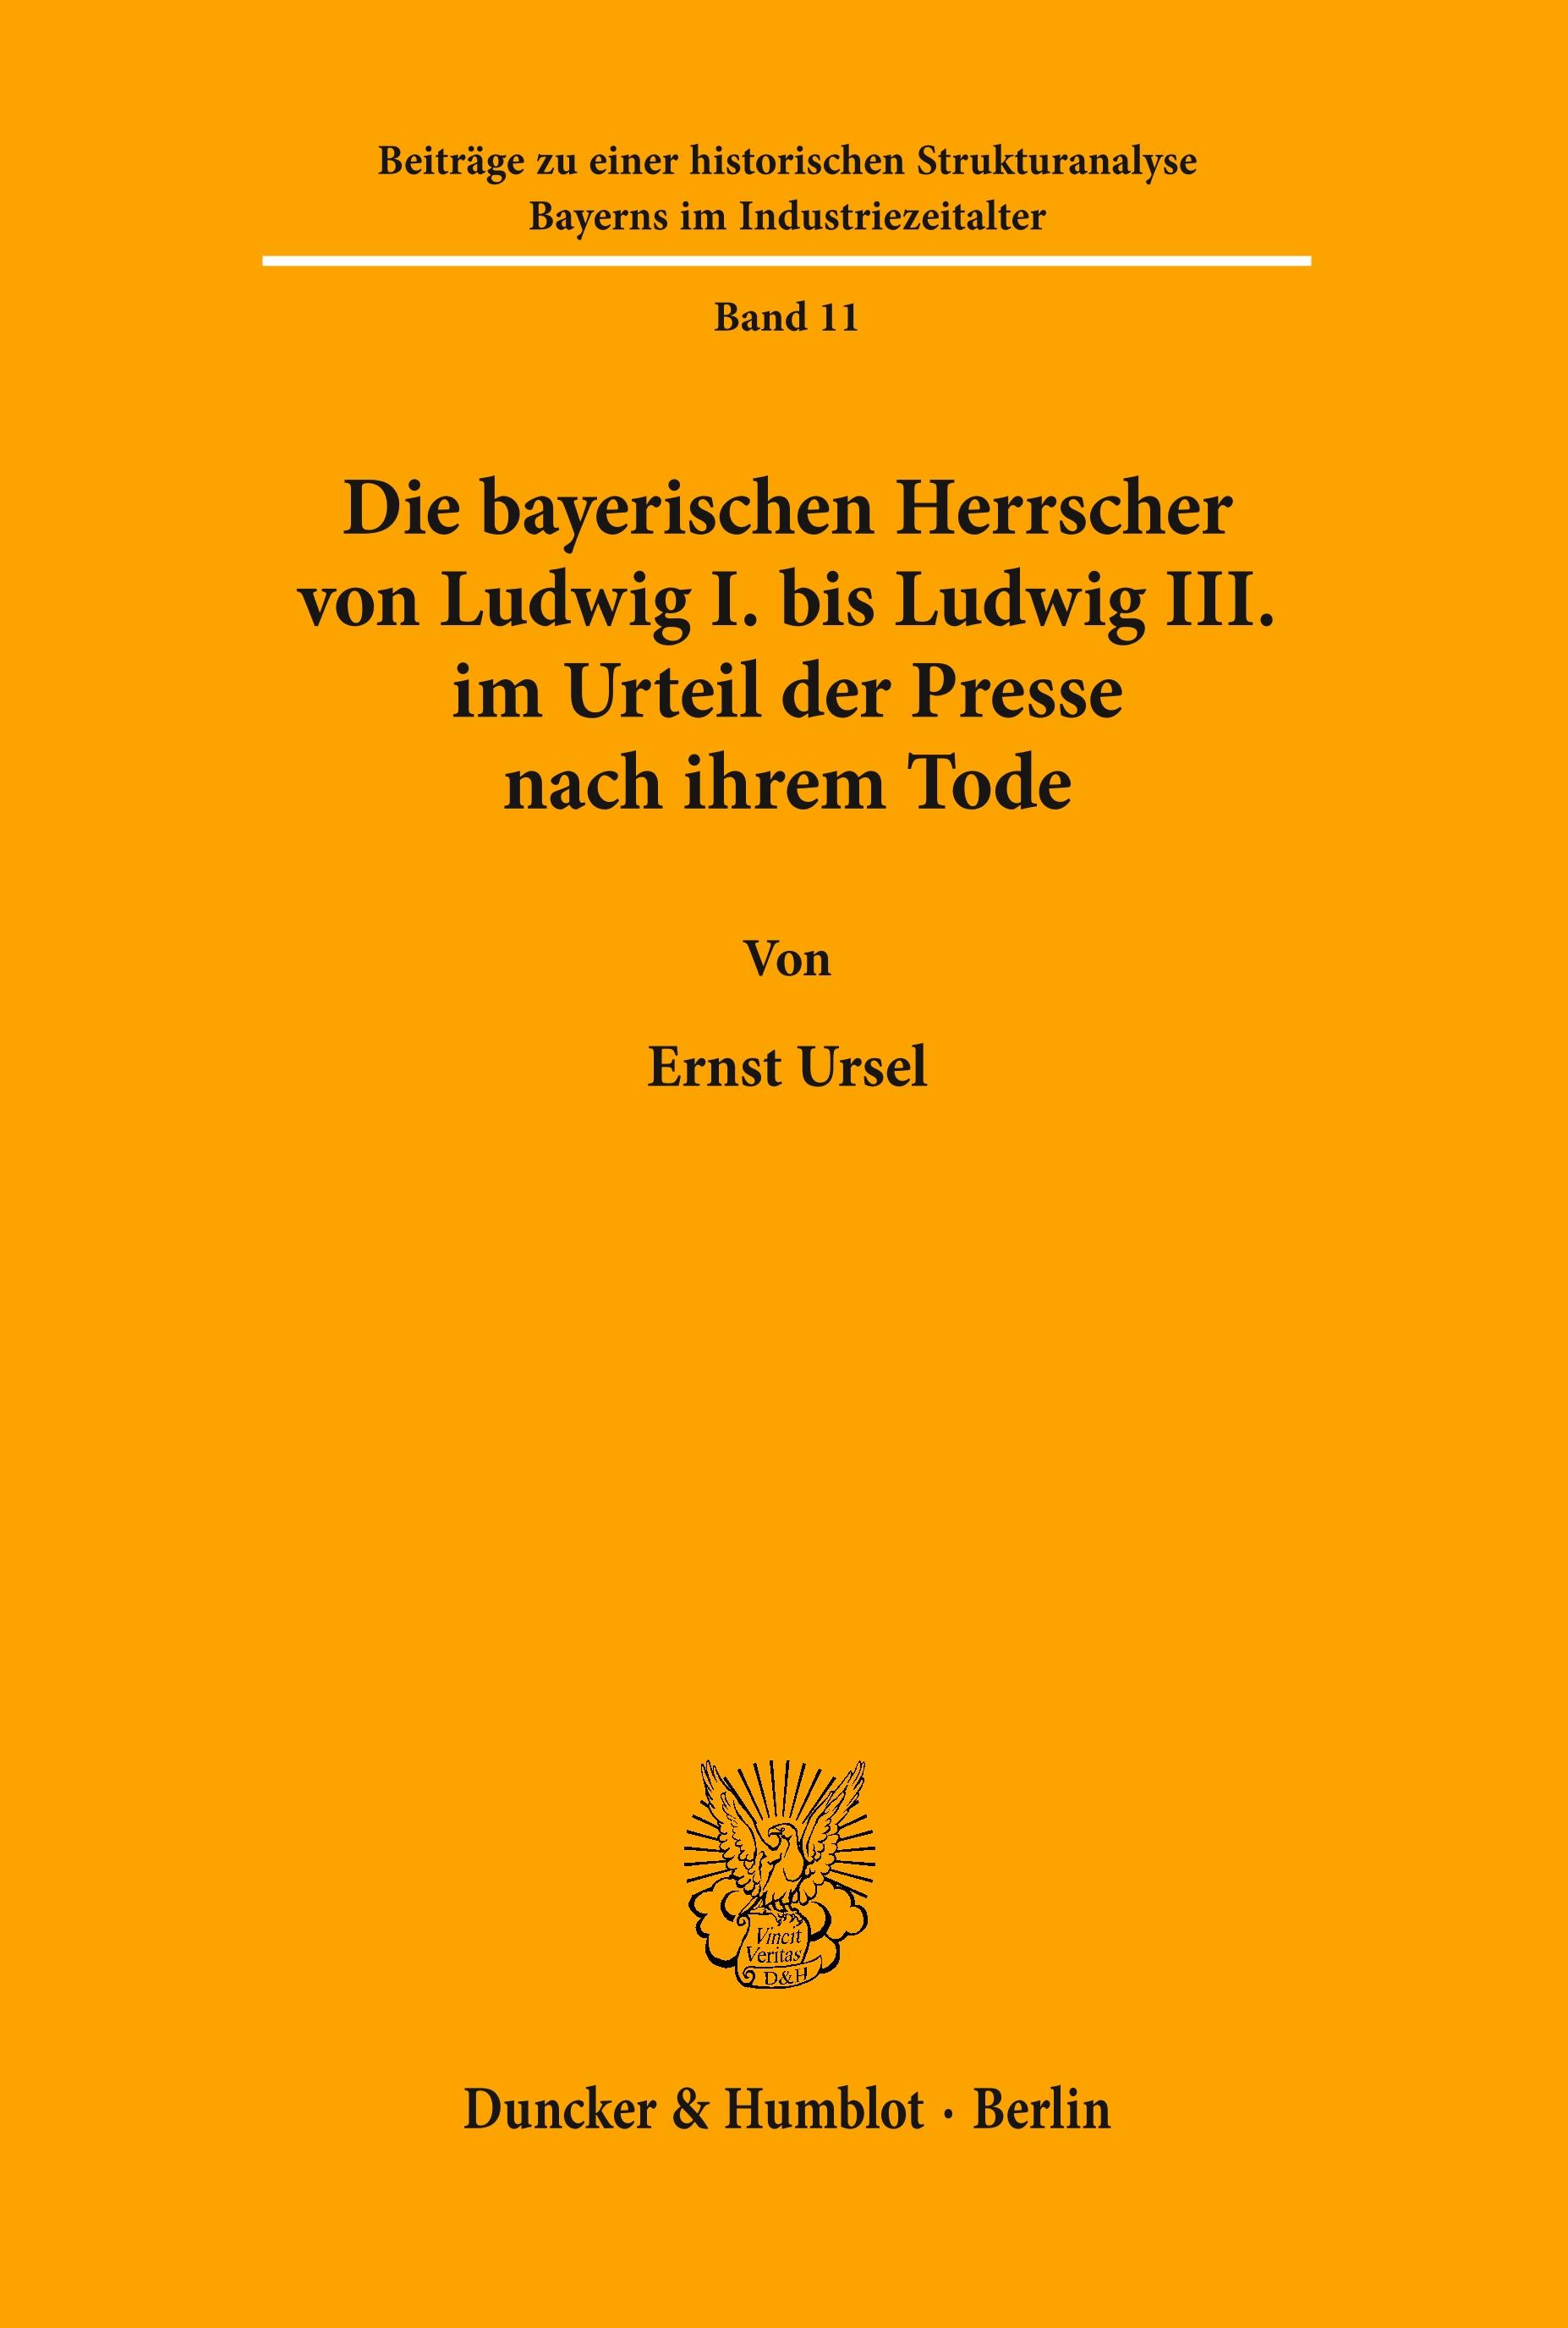 Die bayerischen Herrscher von Ludwig I. bis Ludwig III. im Urteil der Presse nach ihrem Tode. - Ernst Ursel